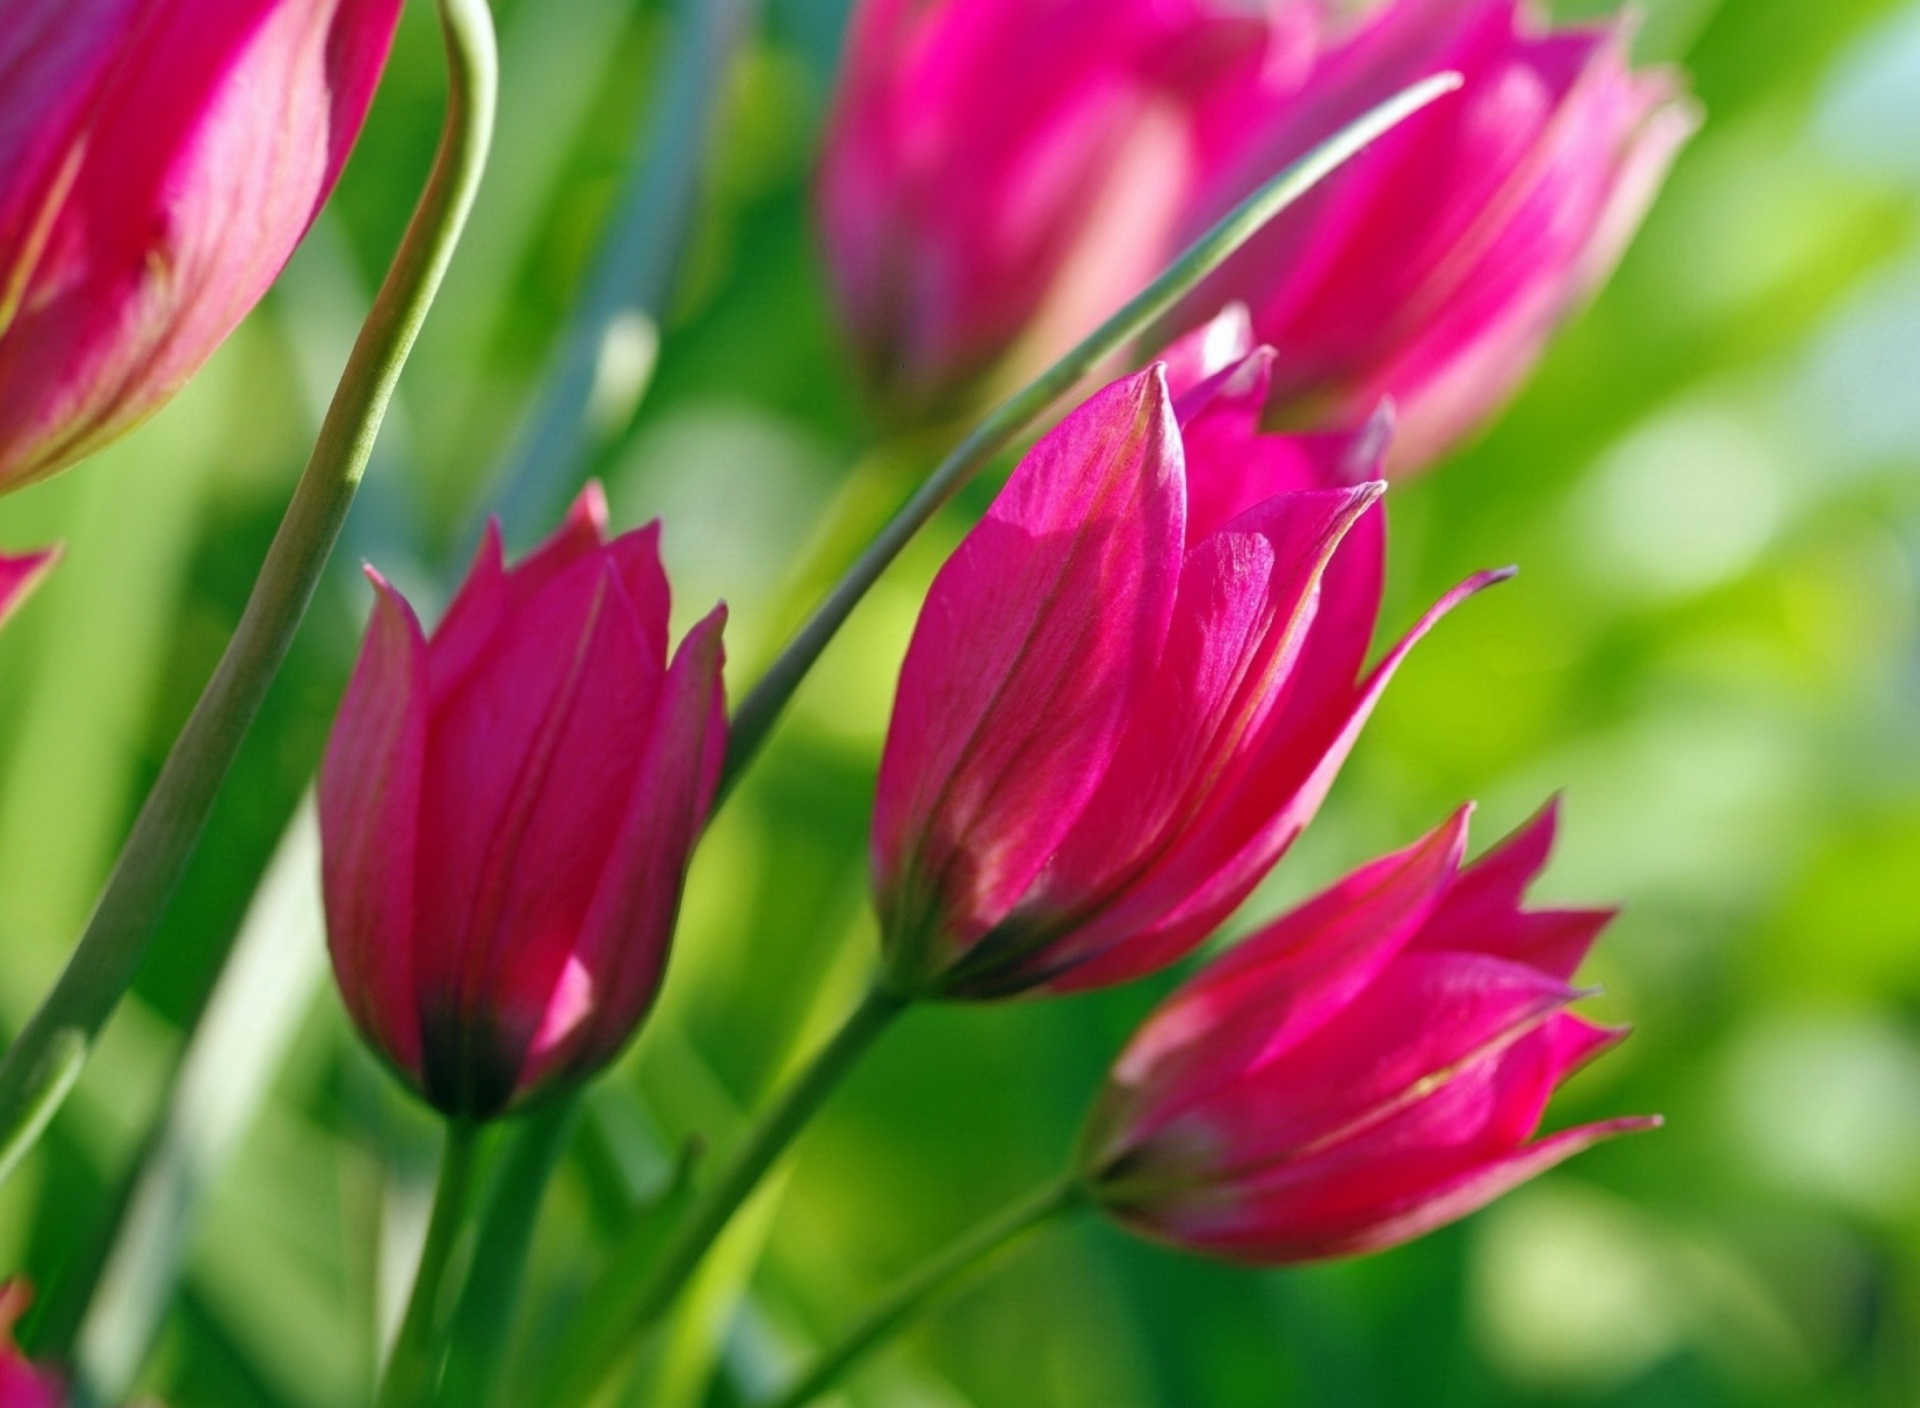 Sfondi Pink Tulips 1920x1408